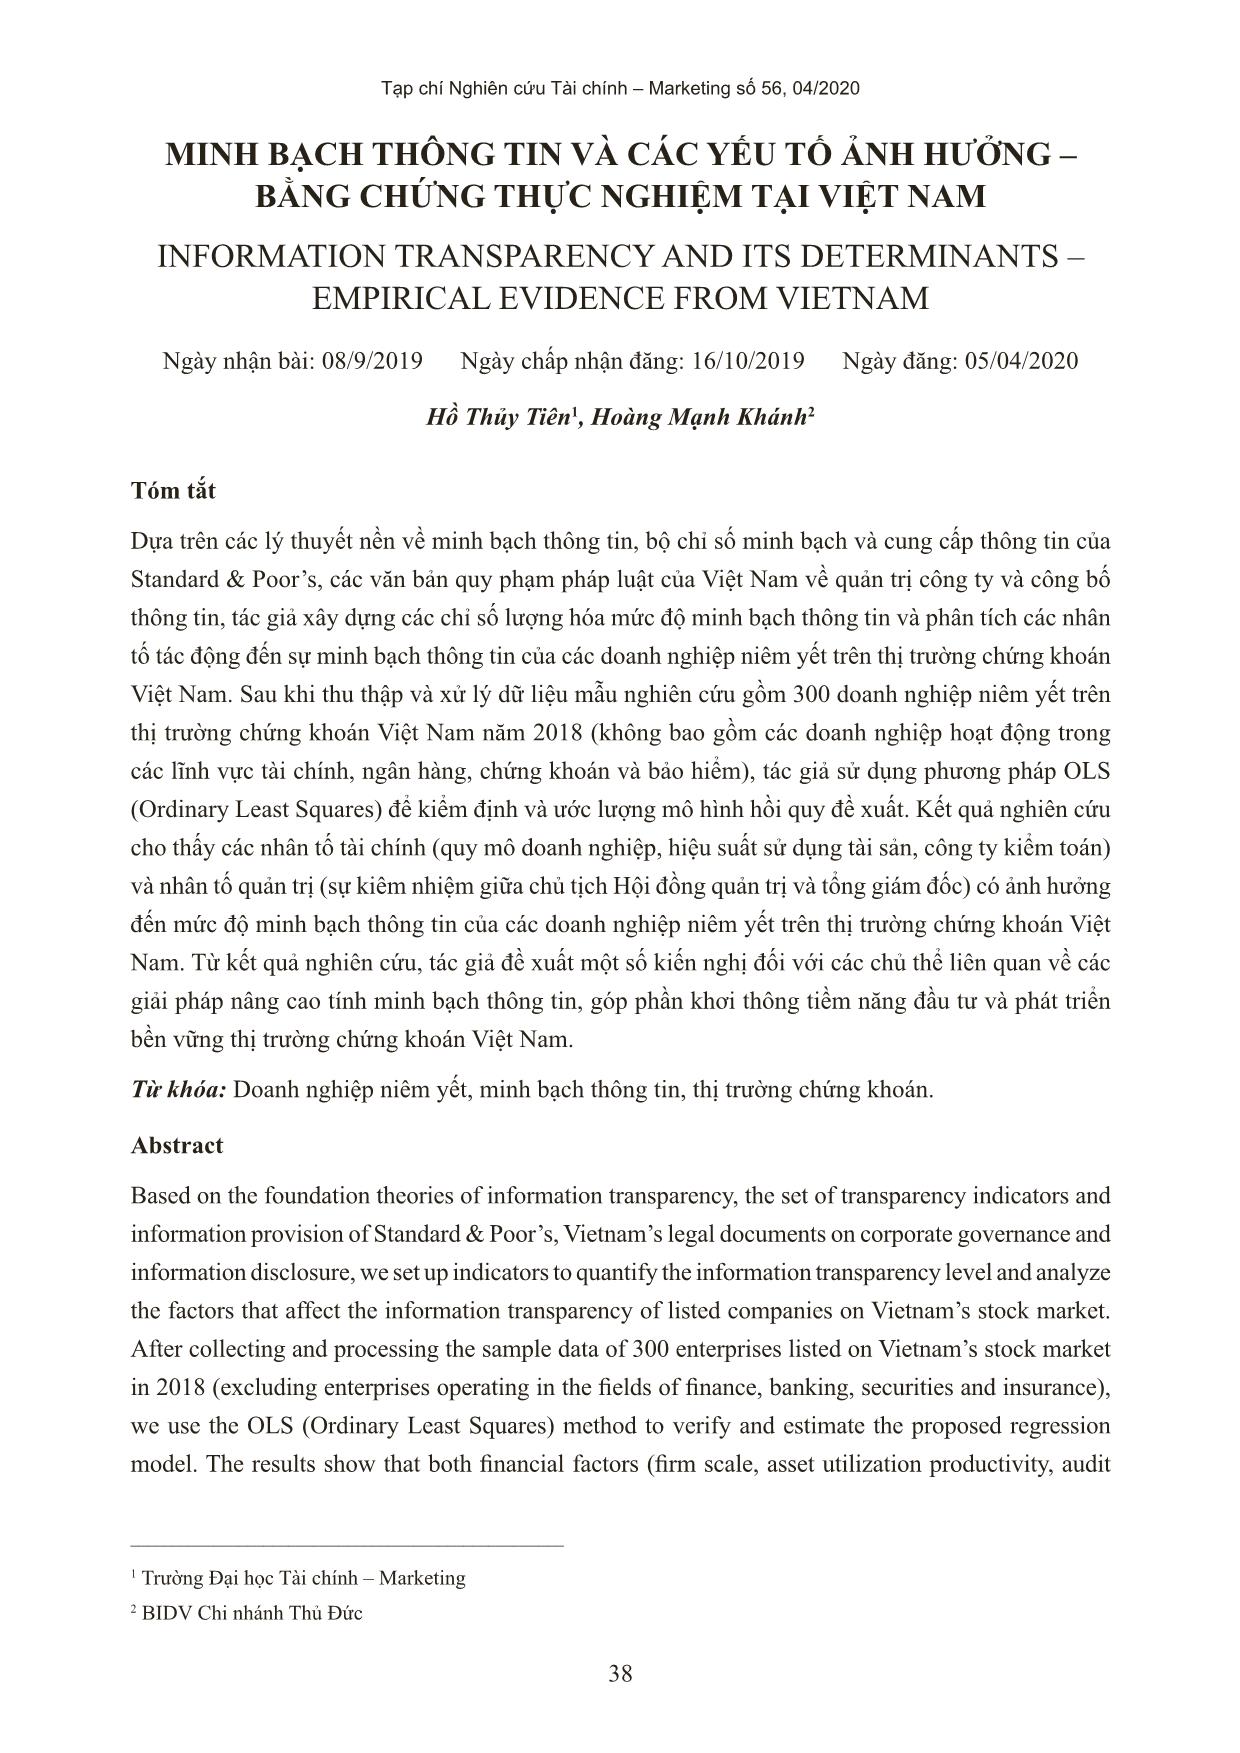 Minh bạch thông tin và các yếu tố ảnh hưởng - bằng chứng thực nghiệm tại Việt Nam trang 1